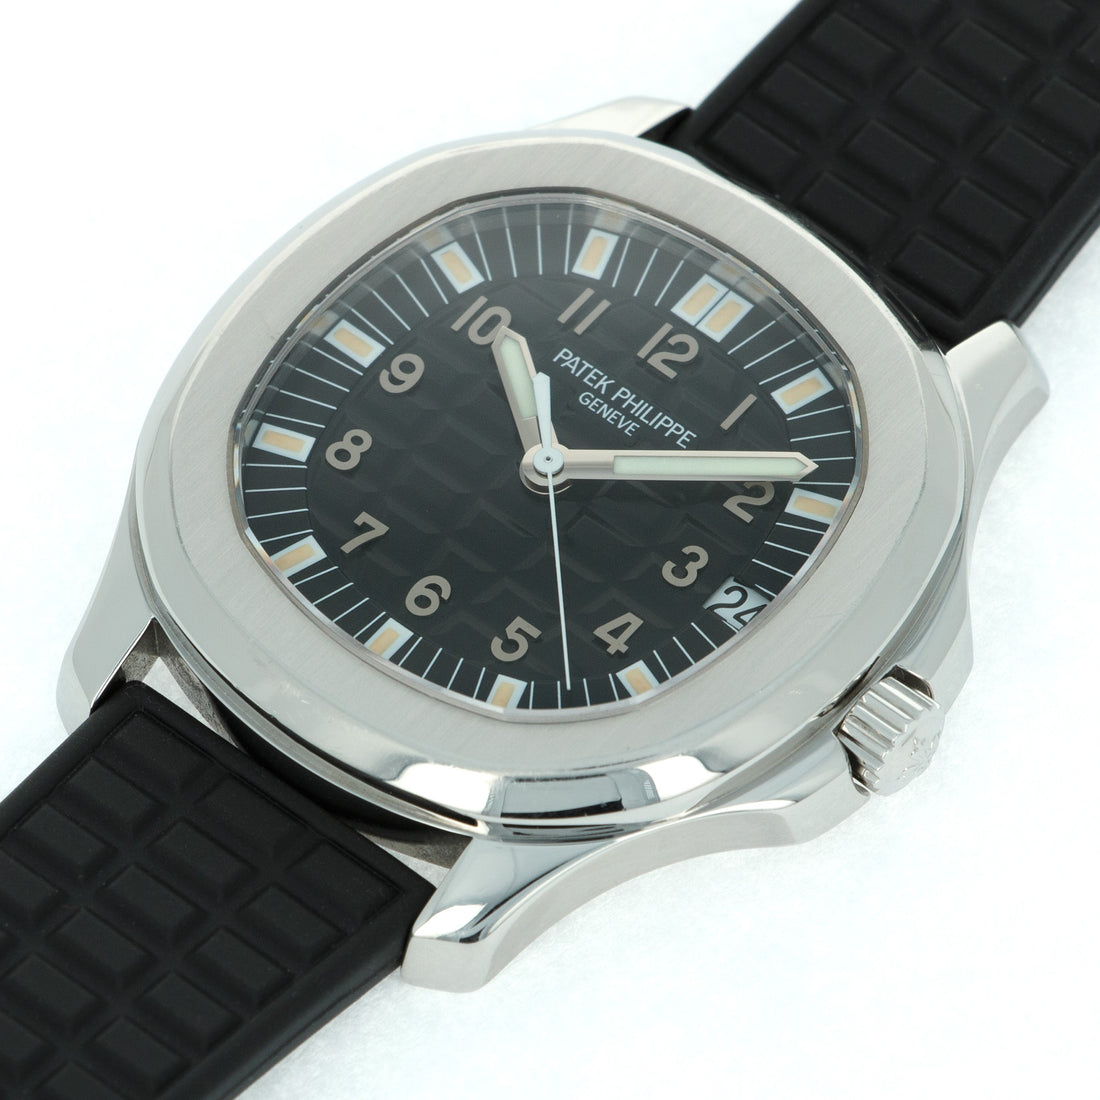 Patek Philippe Aquanaut Jumbo Watch Ref. 5065 with Original Box and Paper